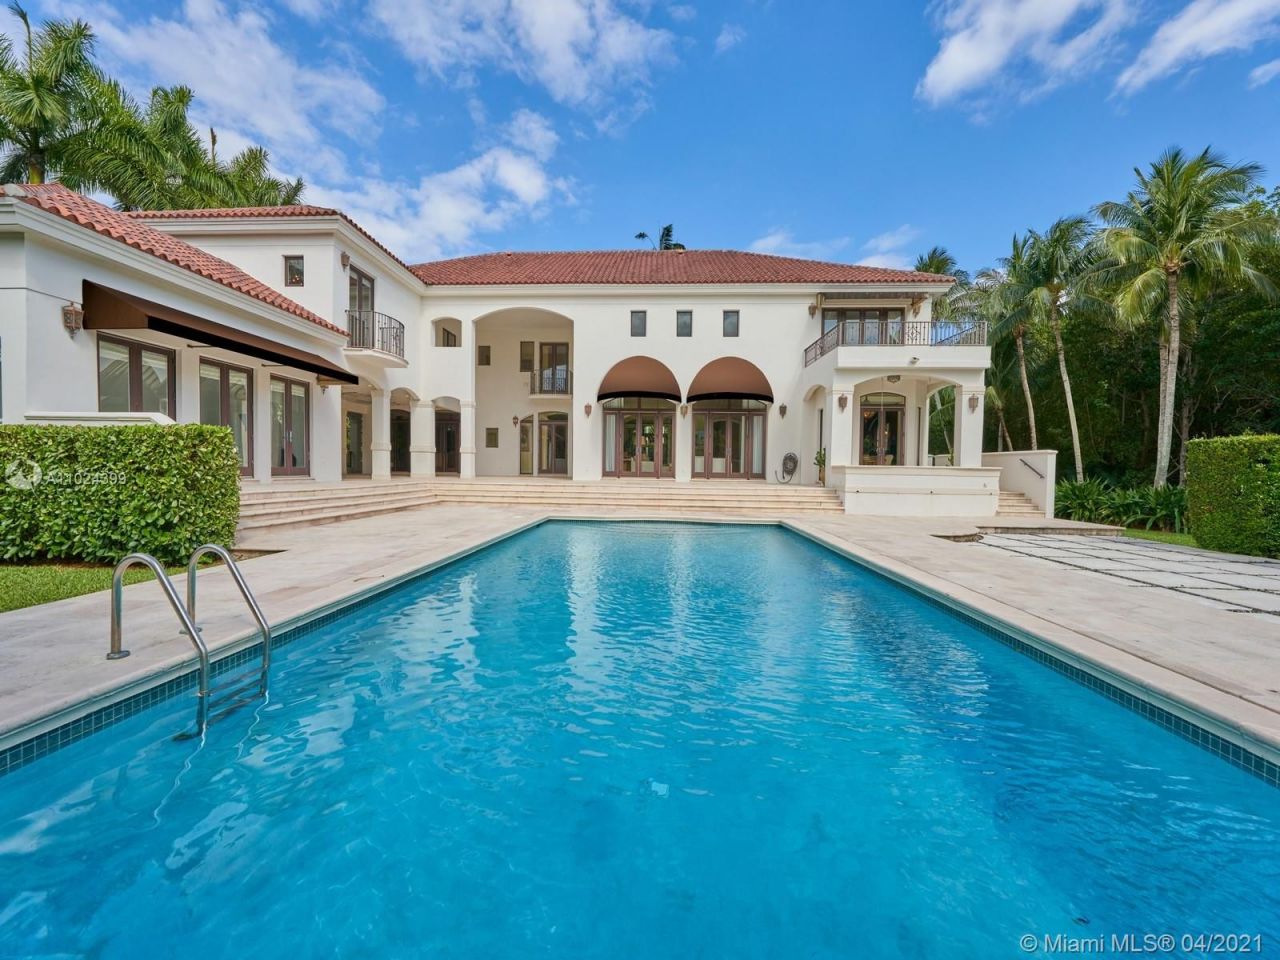 Manor in Miami, USA, 700 sq.m - picture 1